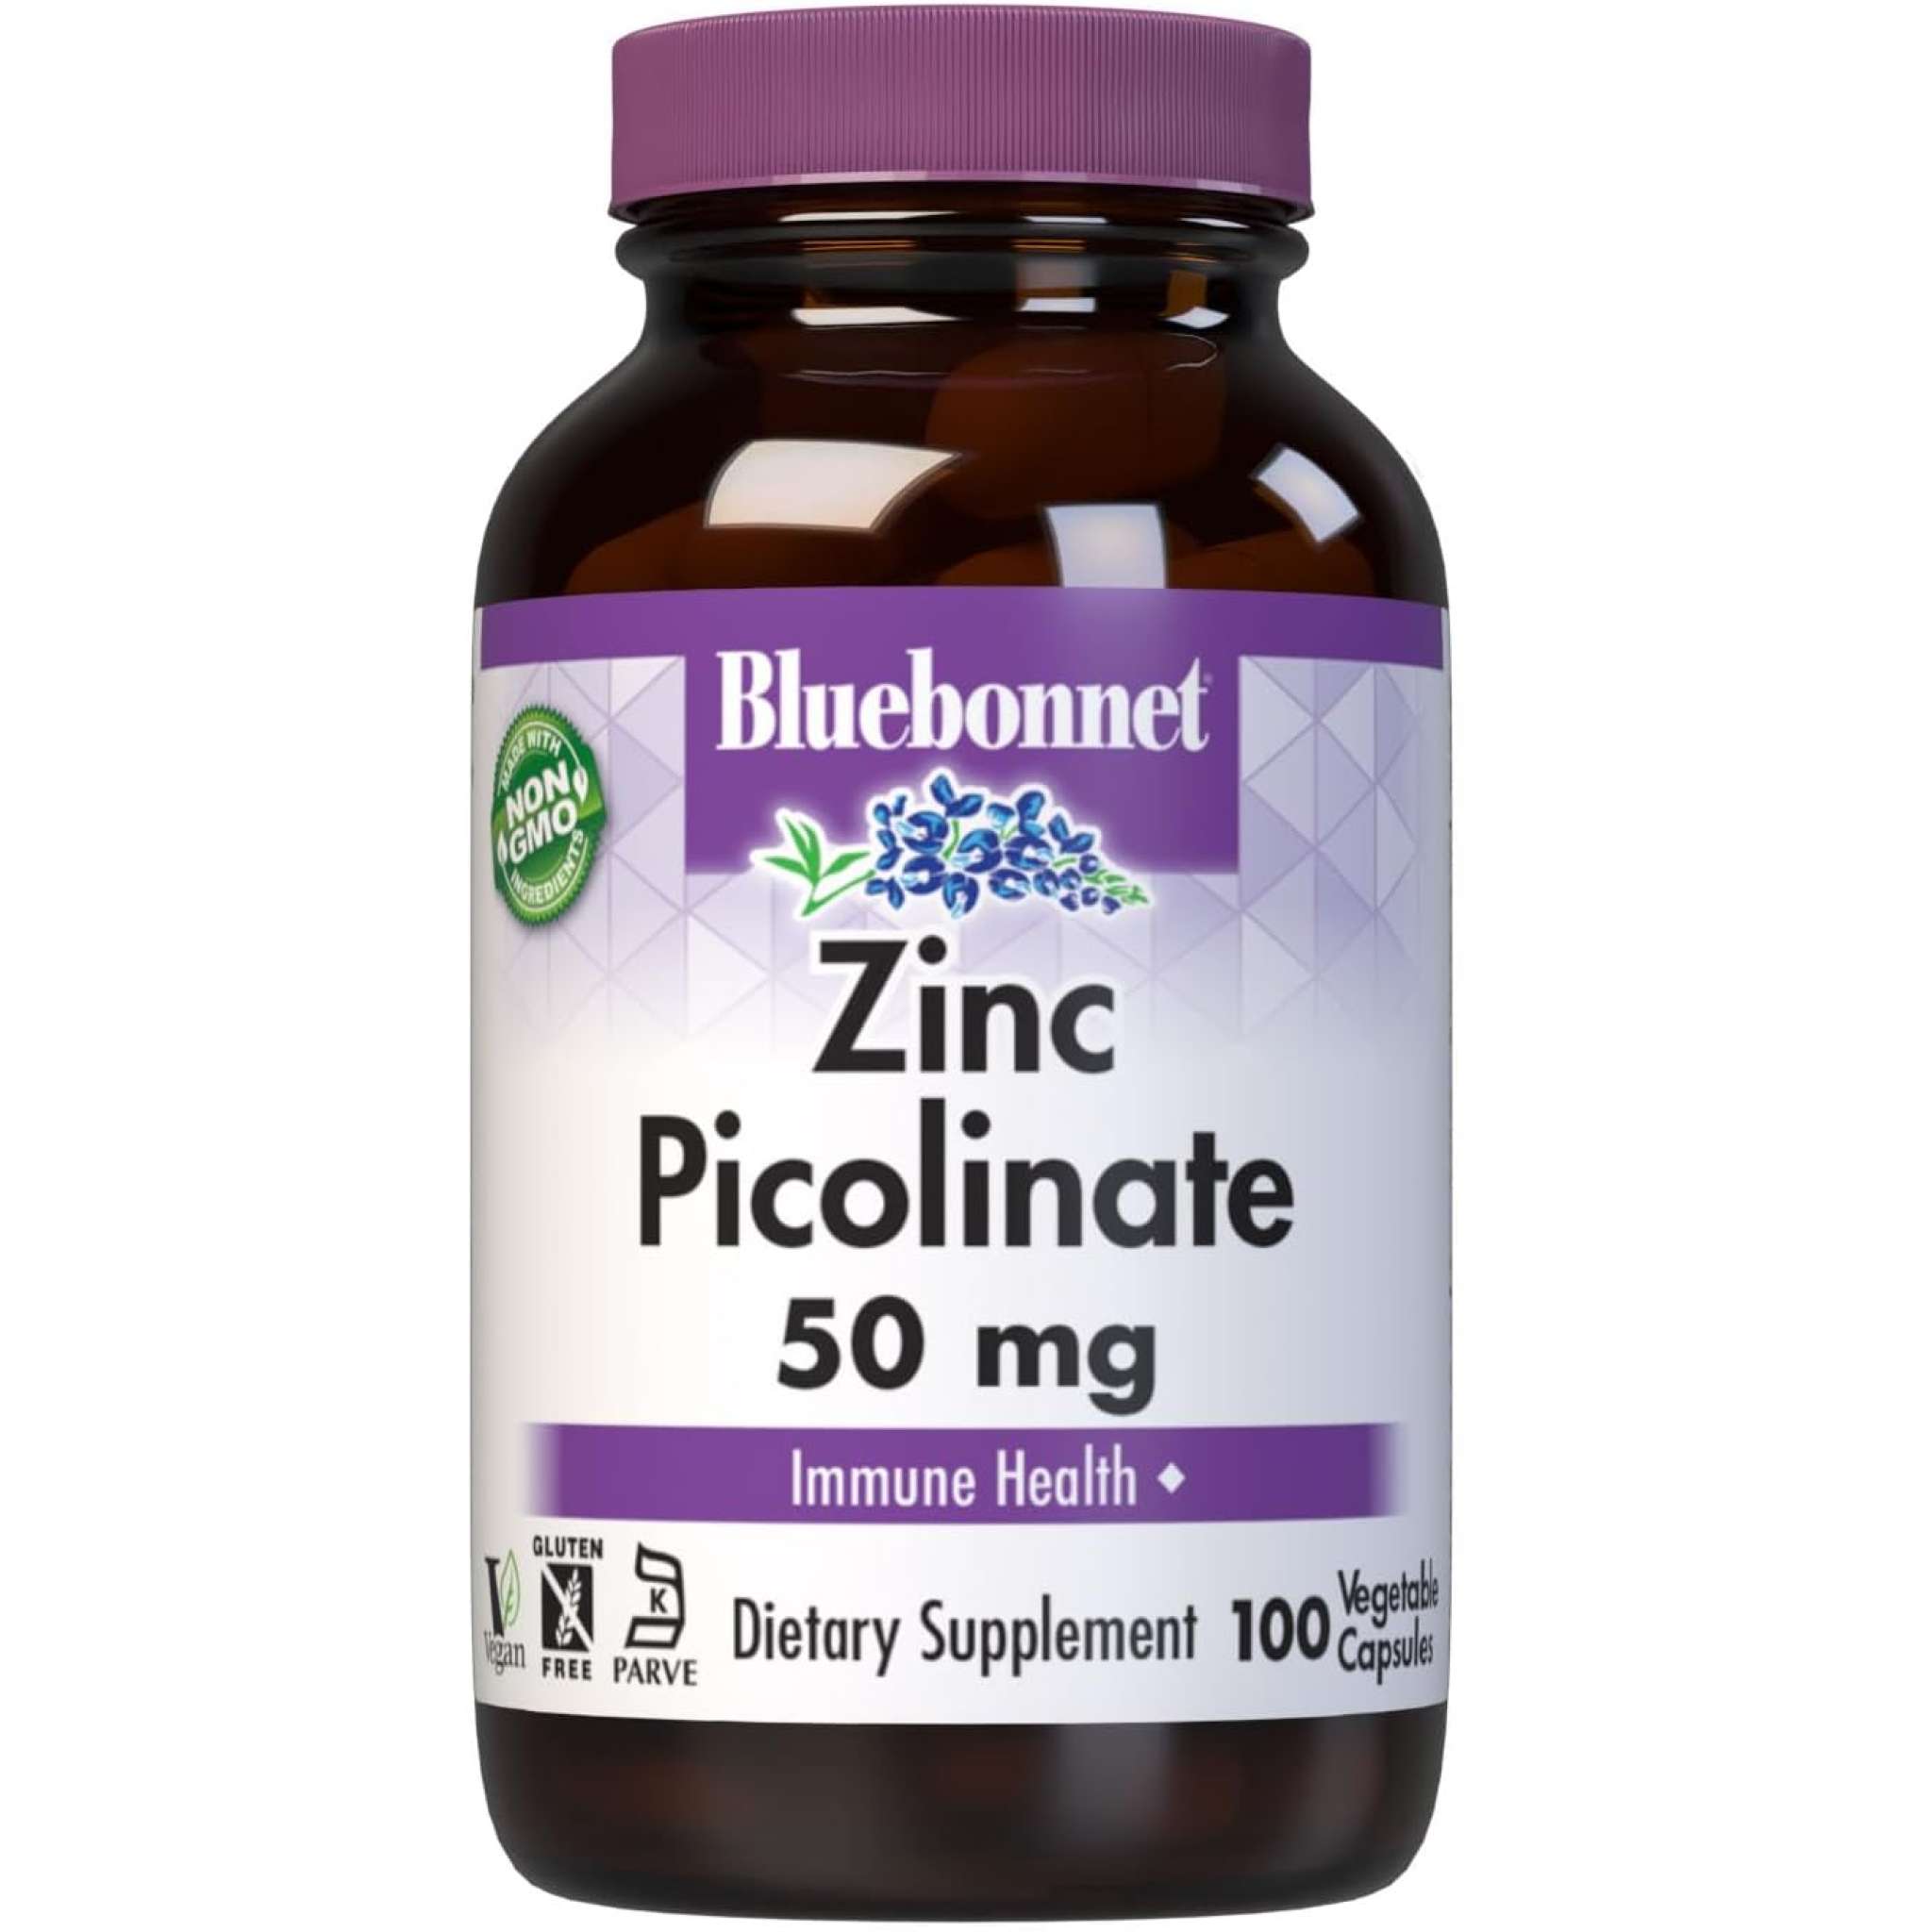 Bluebonnet - Zinc Picolinate 50 mg